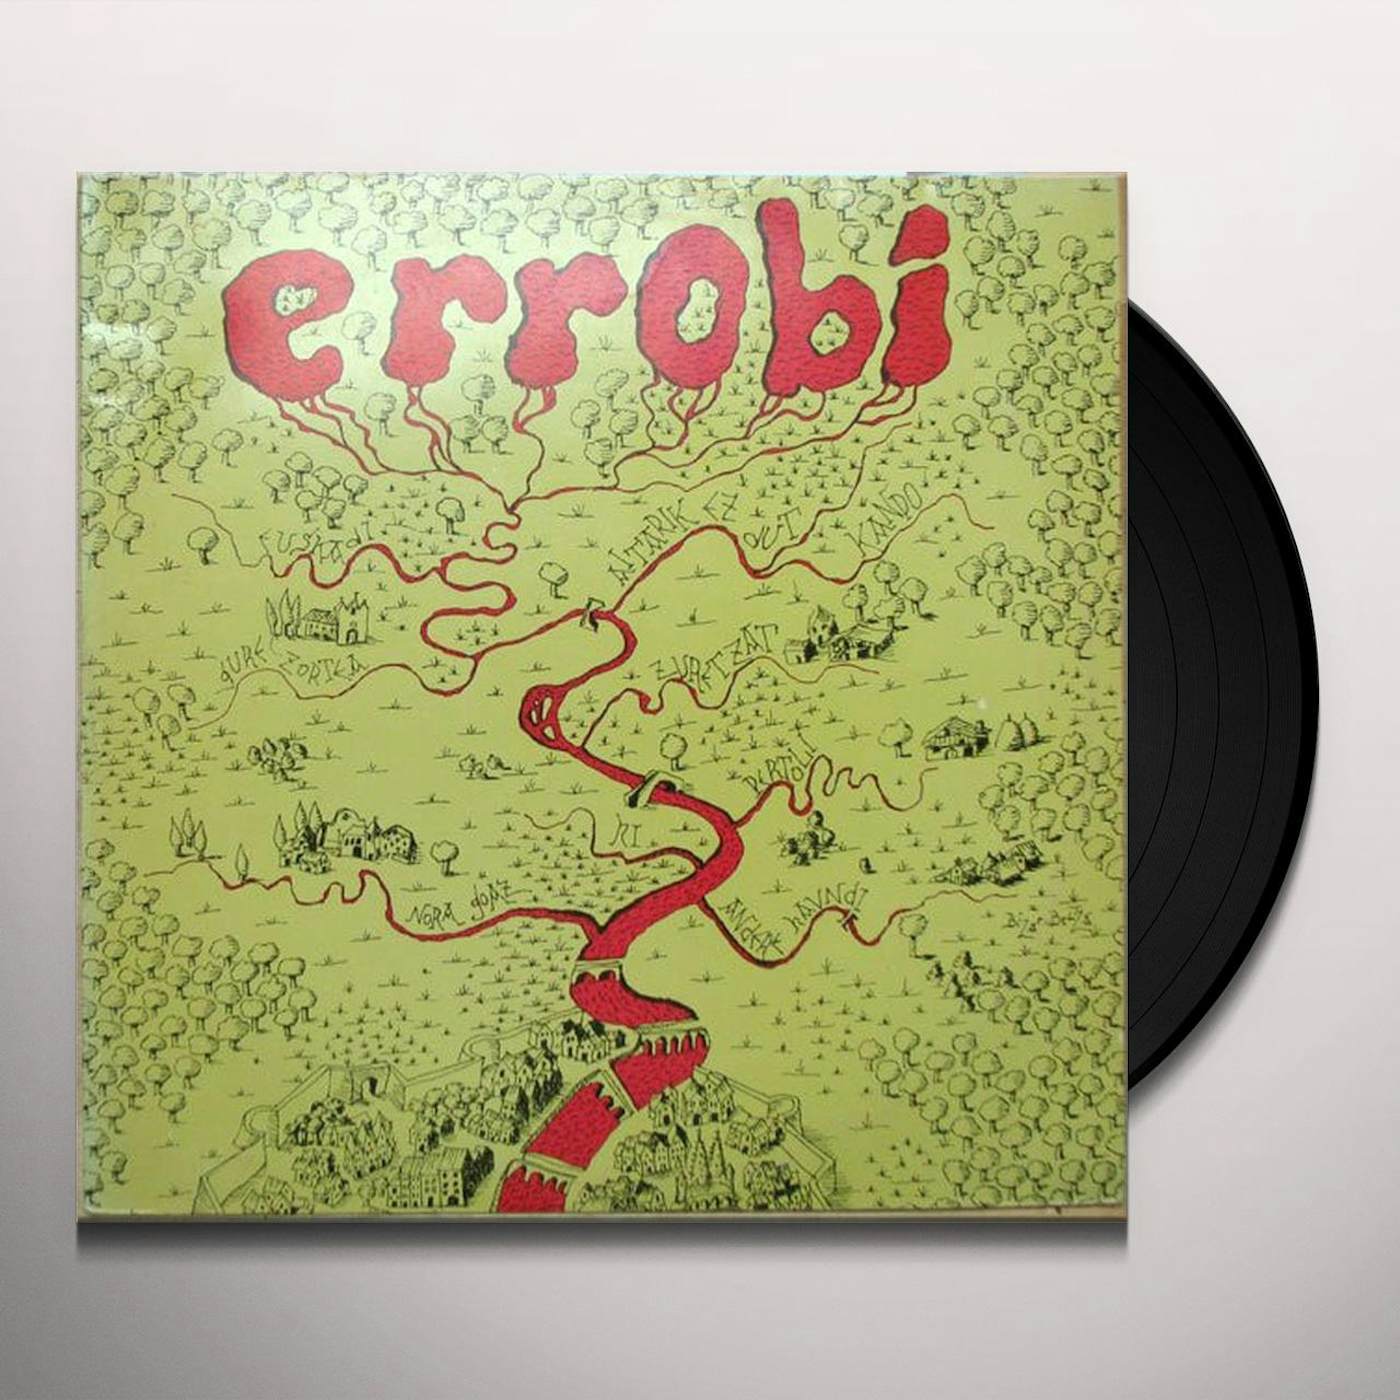 ERROBI (HOL) (Vinyl)